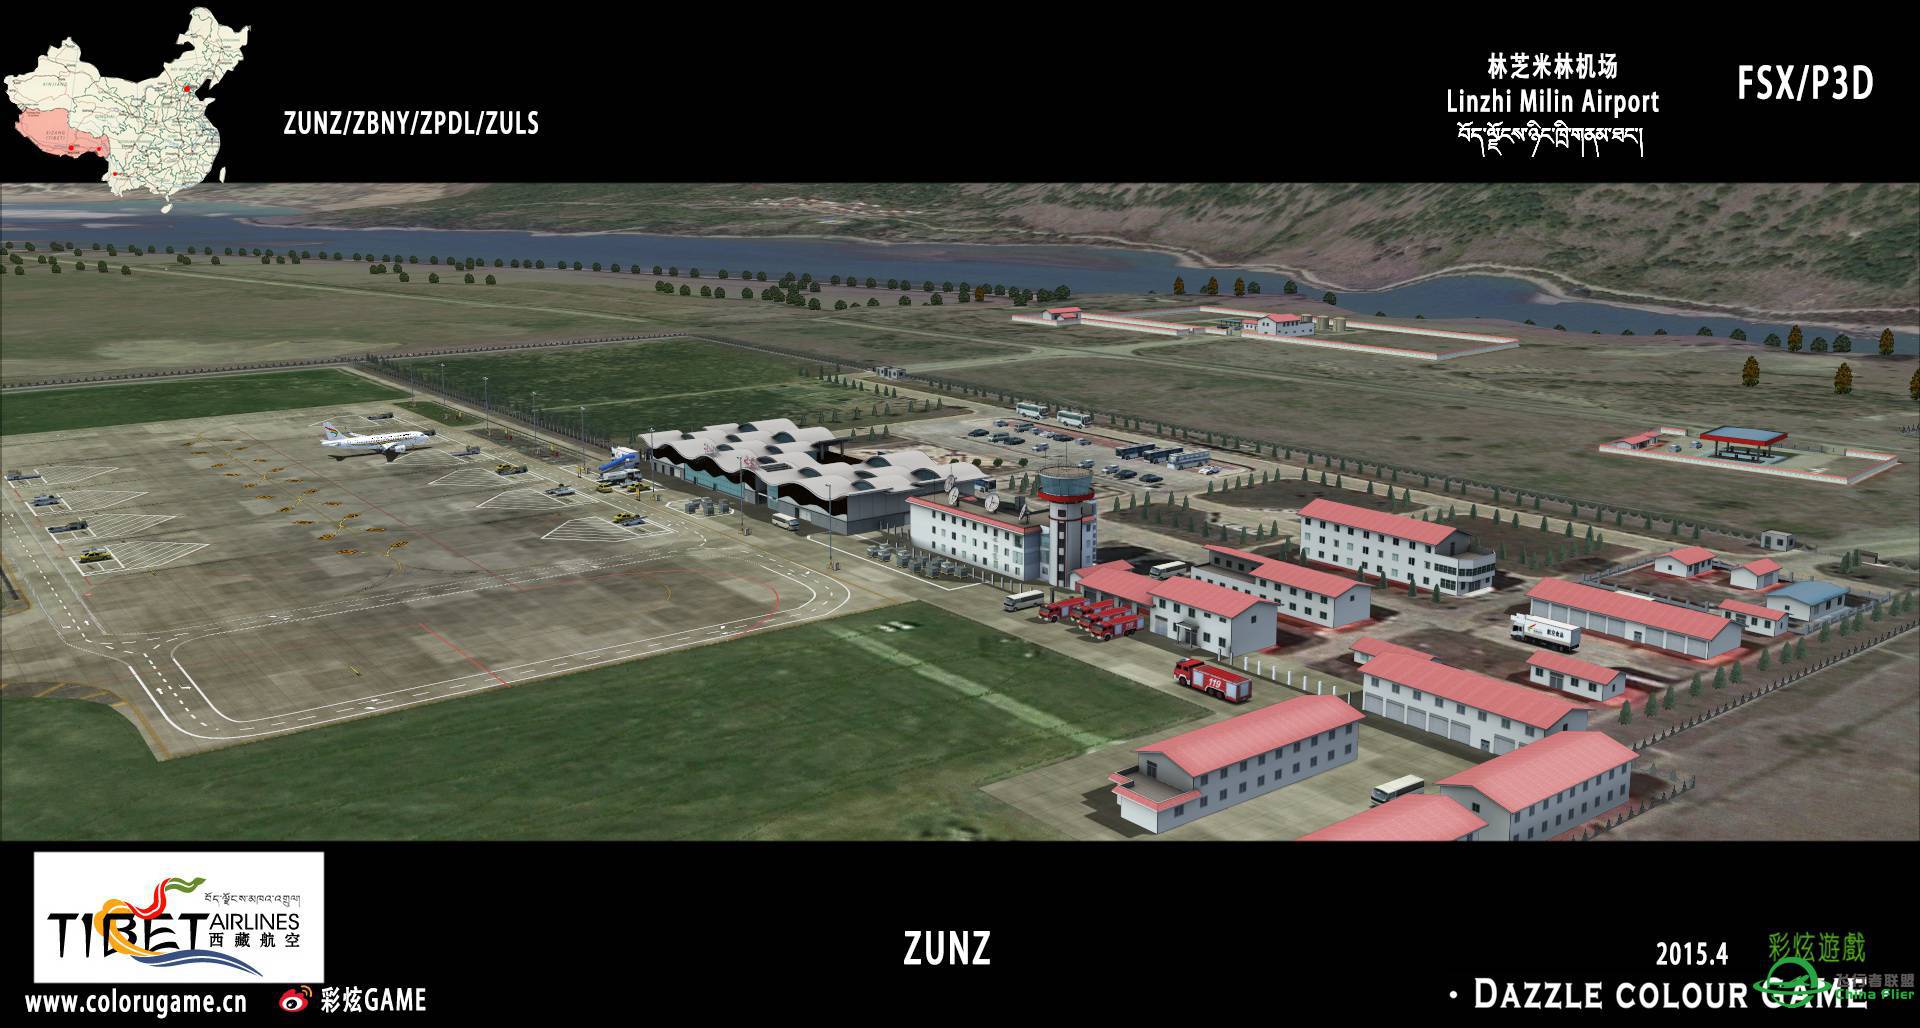 彩炫地景：林芝米林机场（ZUNZ）正式发布！-4017 